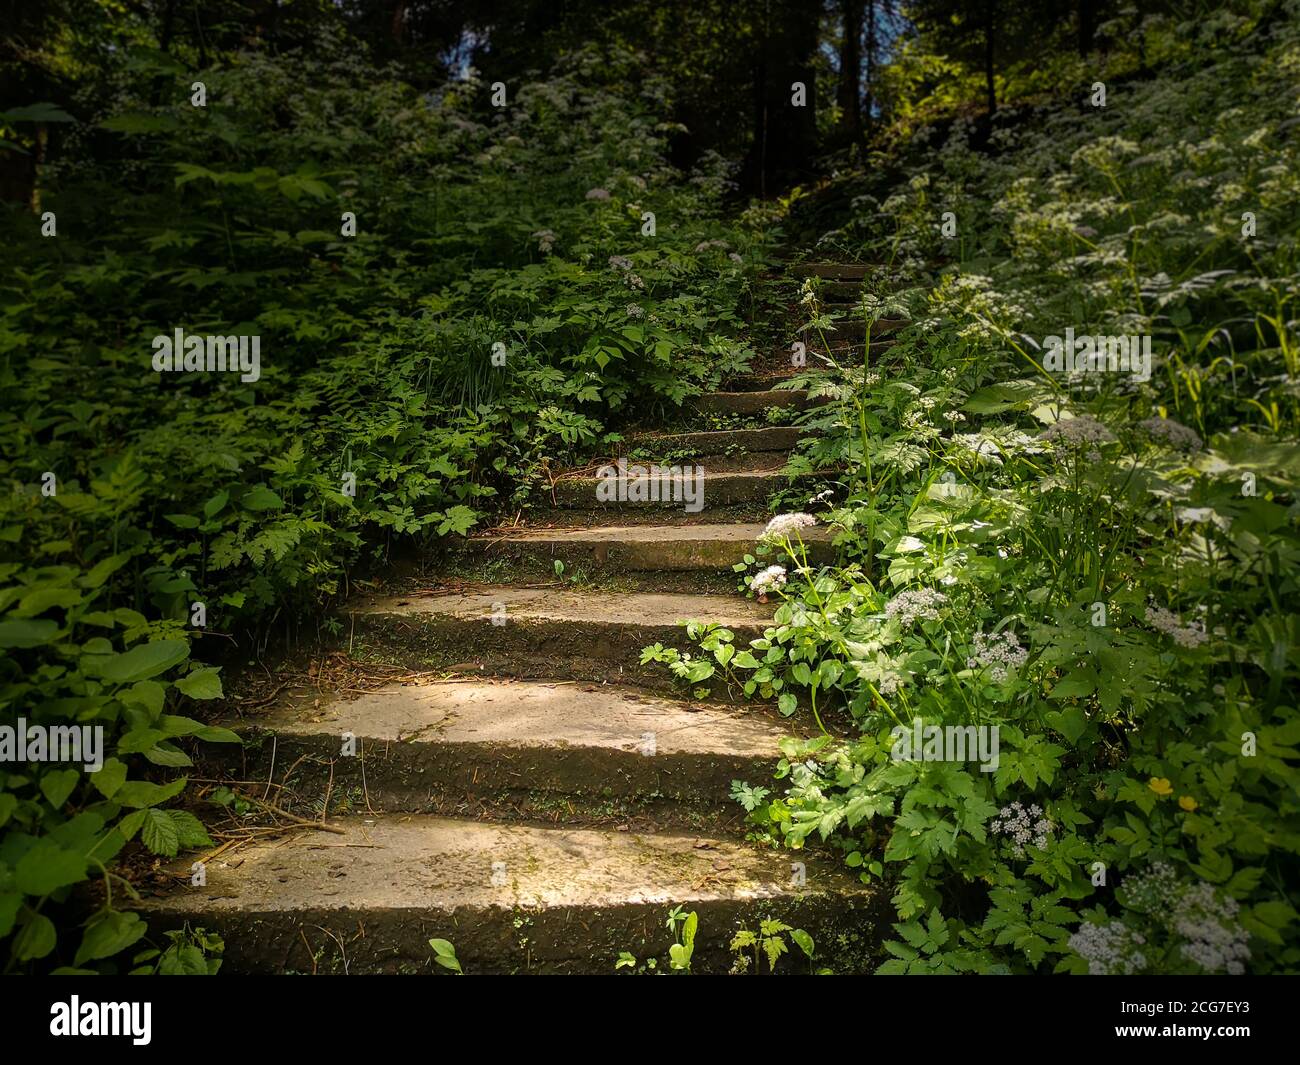 Long escalier en pierre ancien incurvé entouré d'une forte croissance d'herbe verte et de buissons et disparaissant en profondeur du parc forestier. Banque D'Images